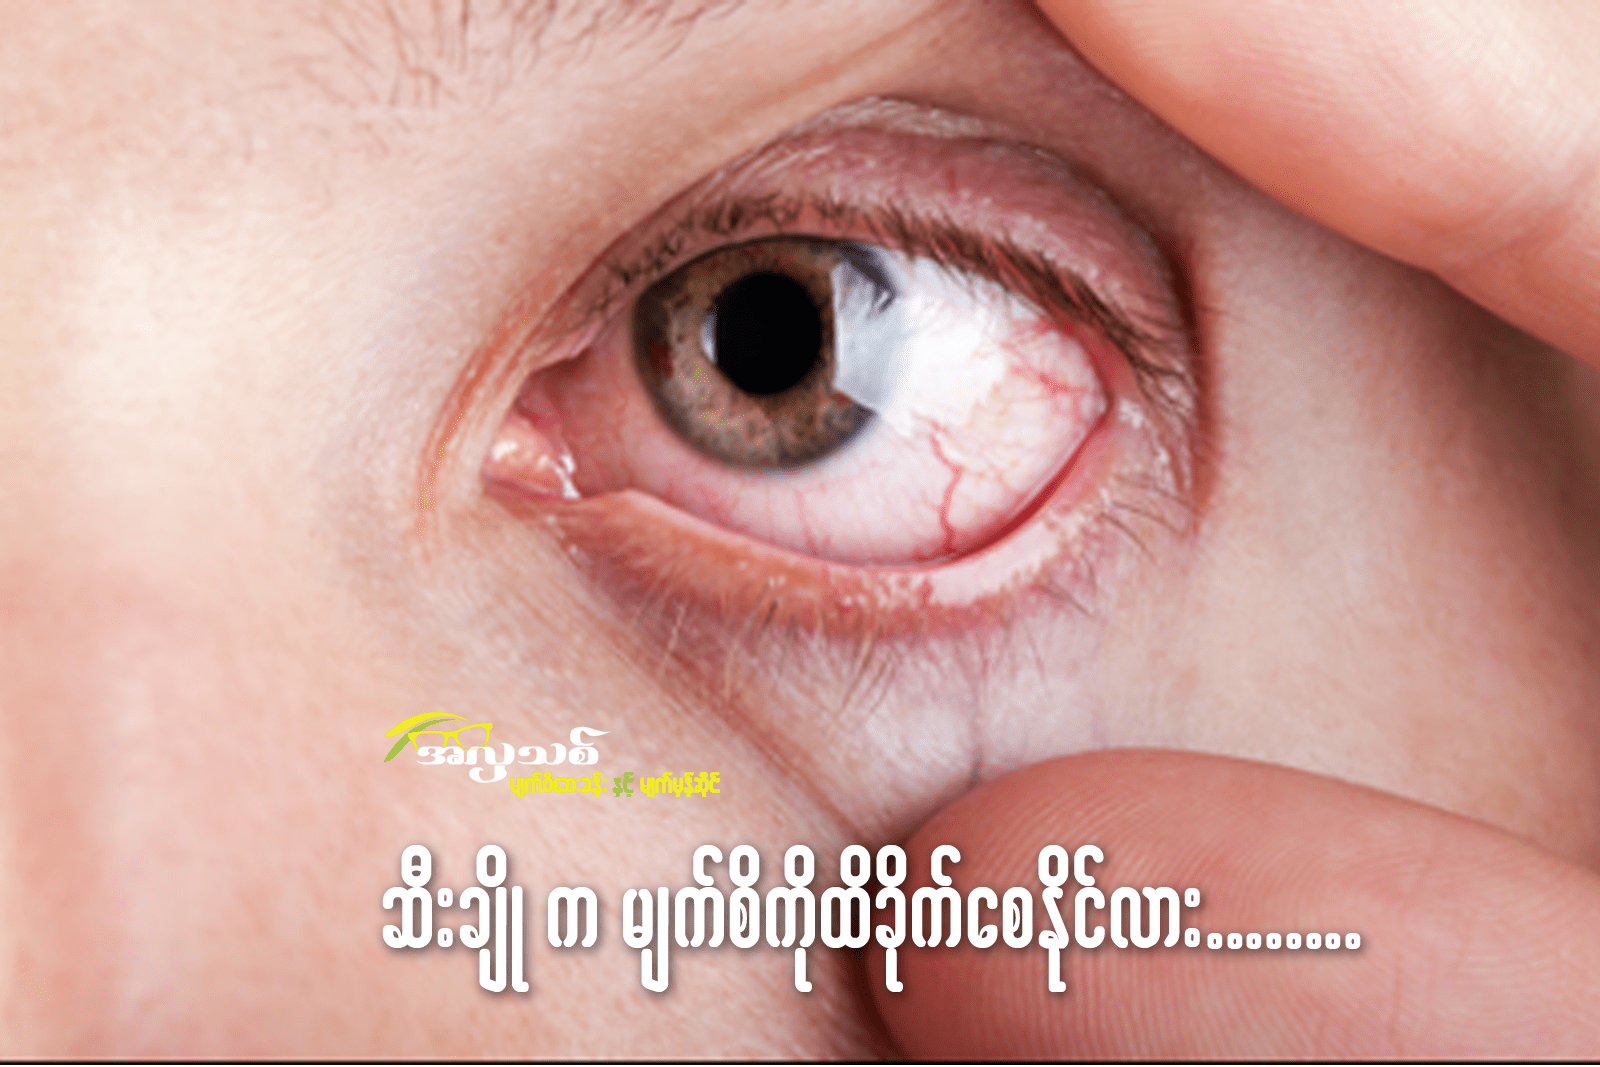 ဆီးချိုရောဂါကမျက်စိကိုထိခိုက်စေနိုင်လား? အပိုင်း (၂) အတွင်းတိမ်ဖြစ်ခြင်း